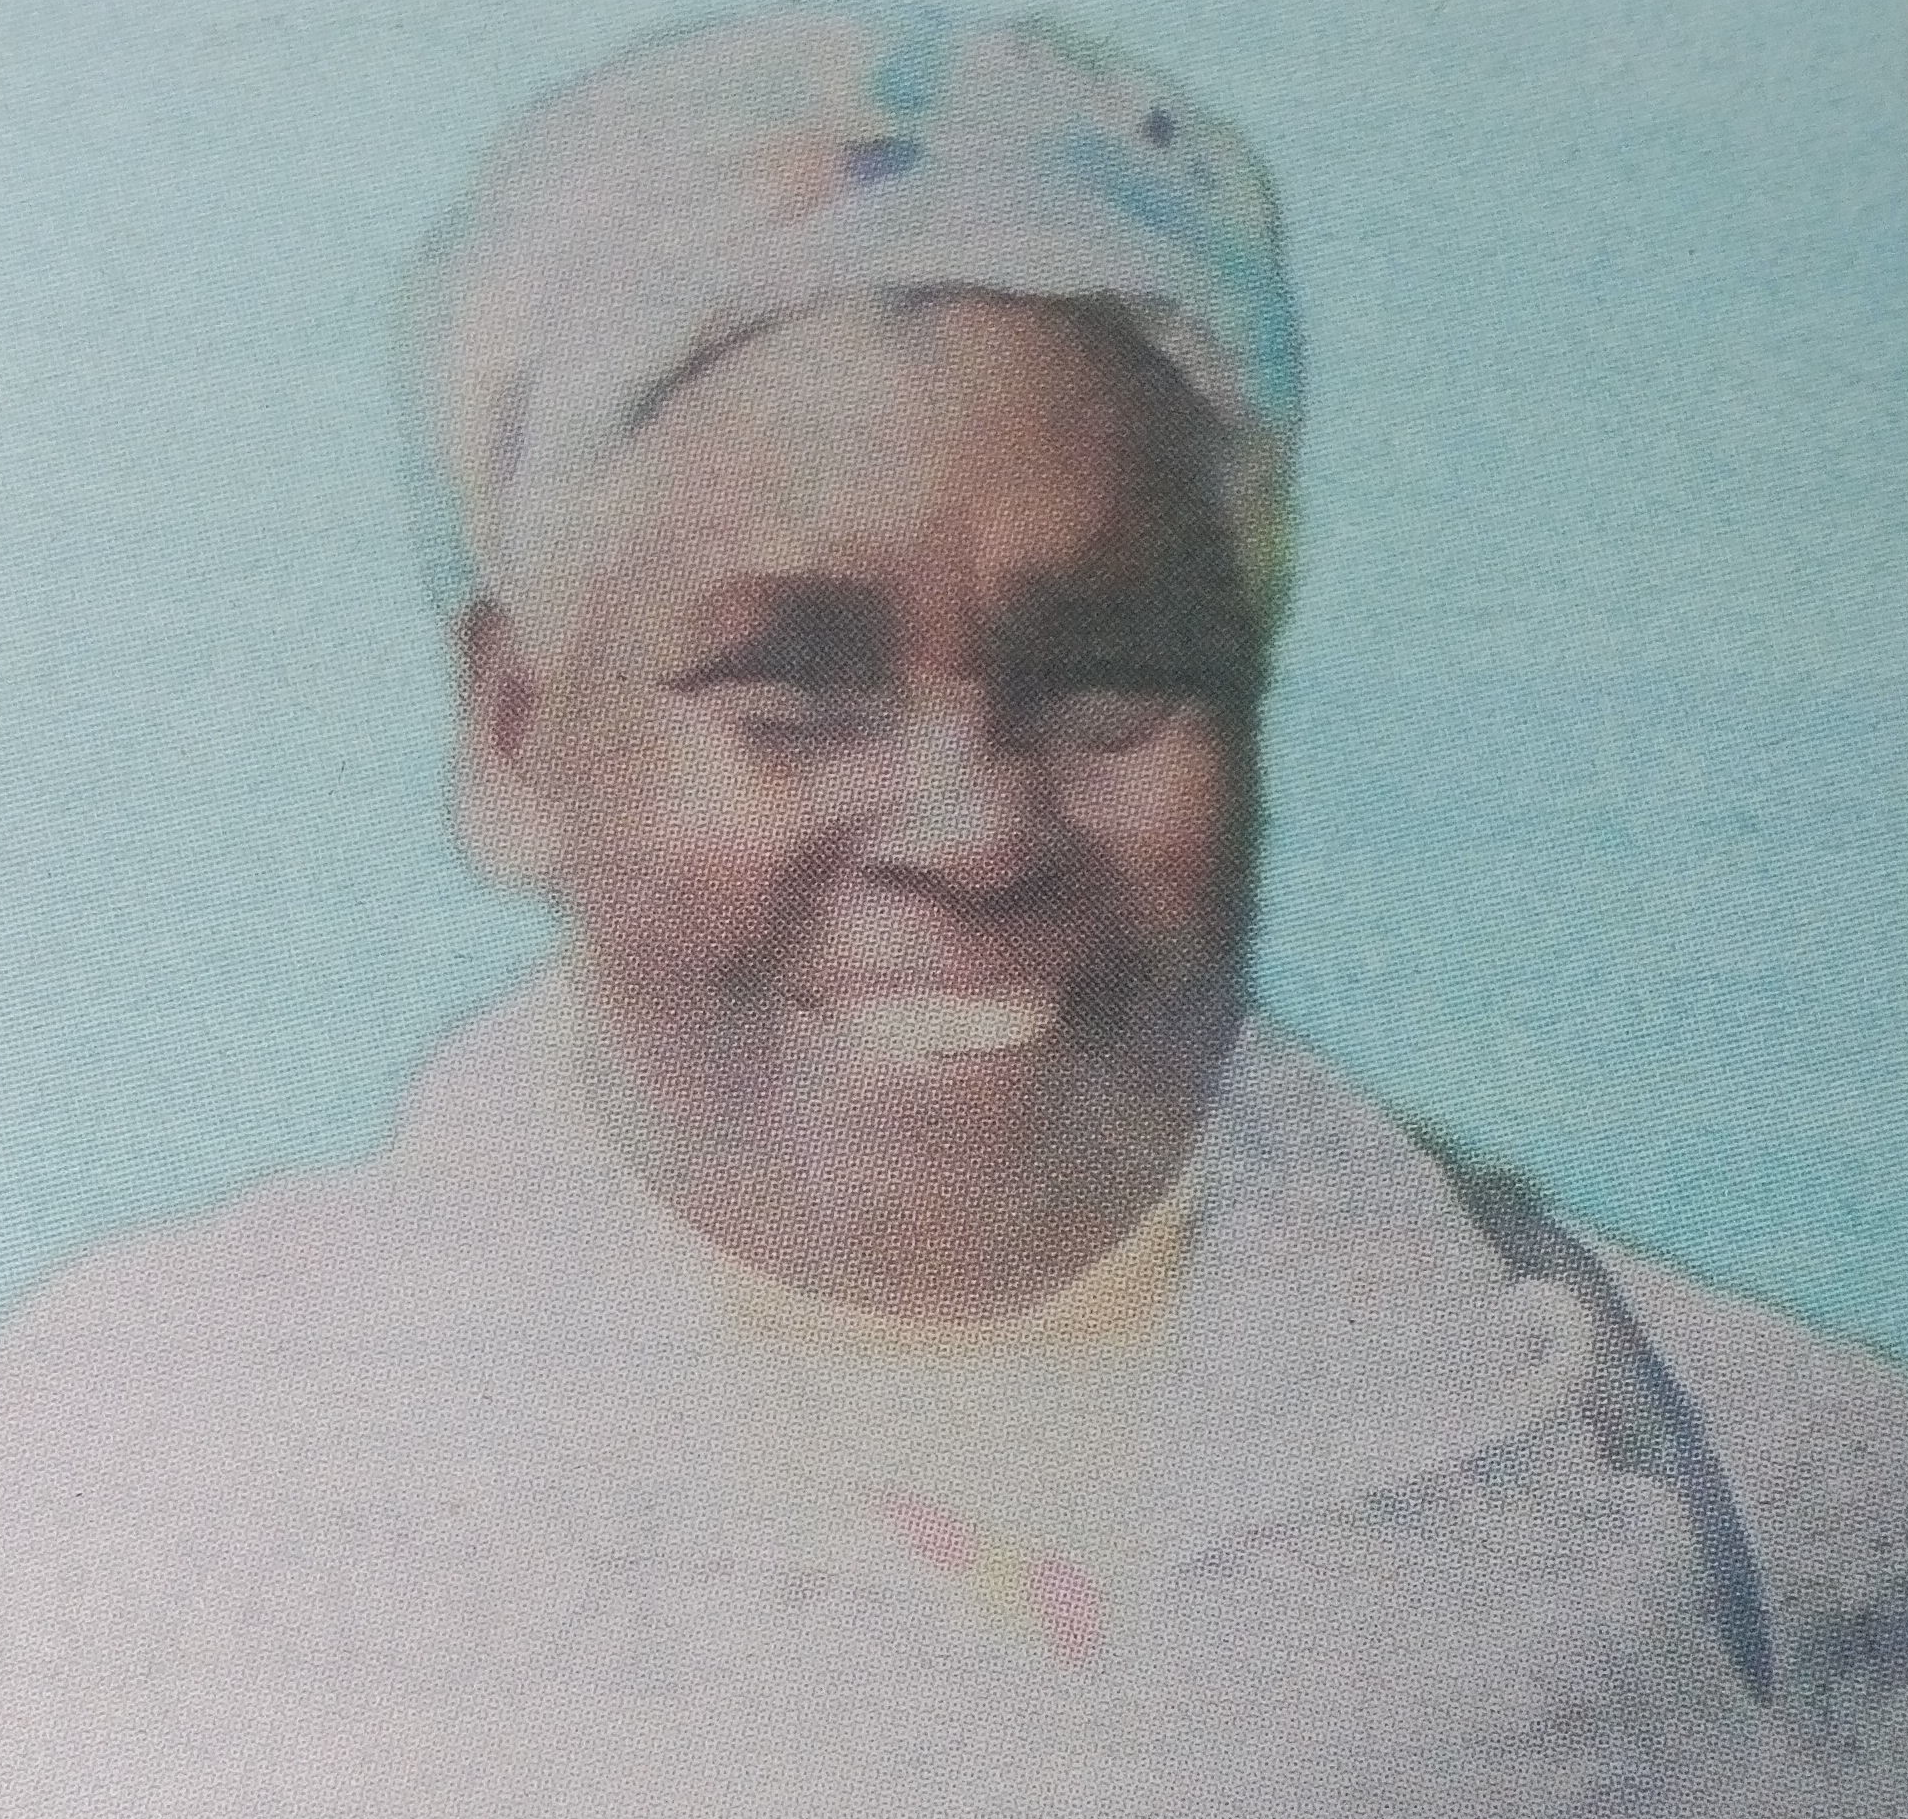 Obituary Image of Margaret Njoki Gathua